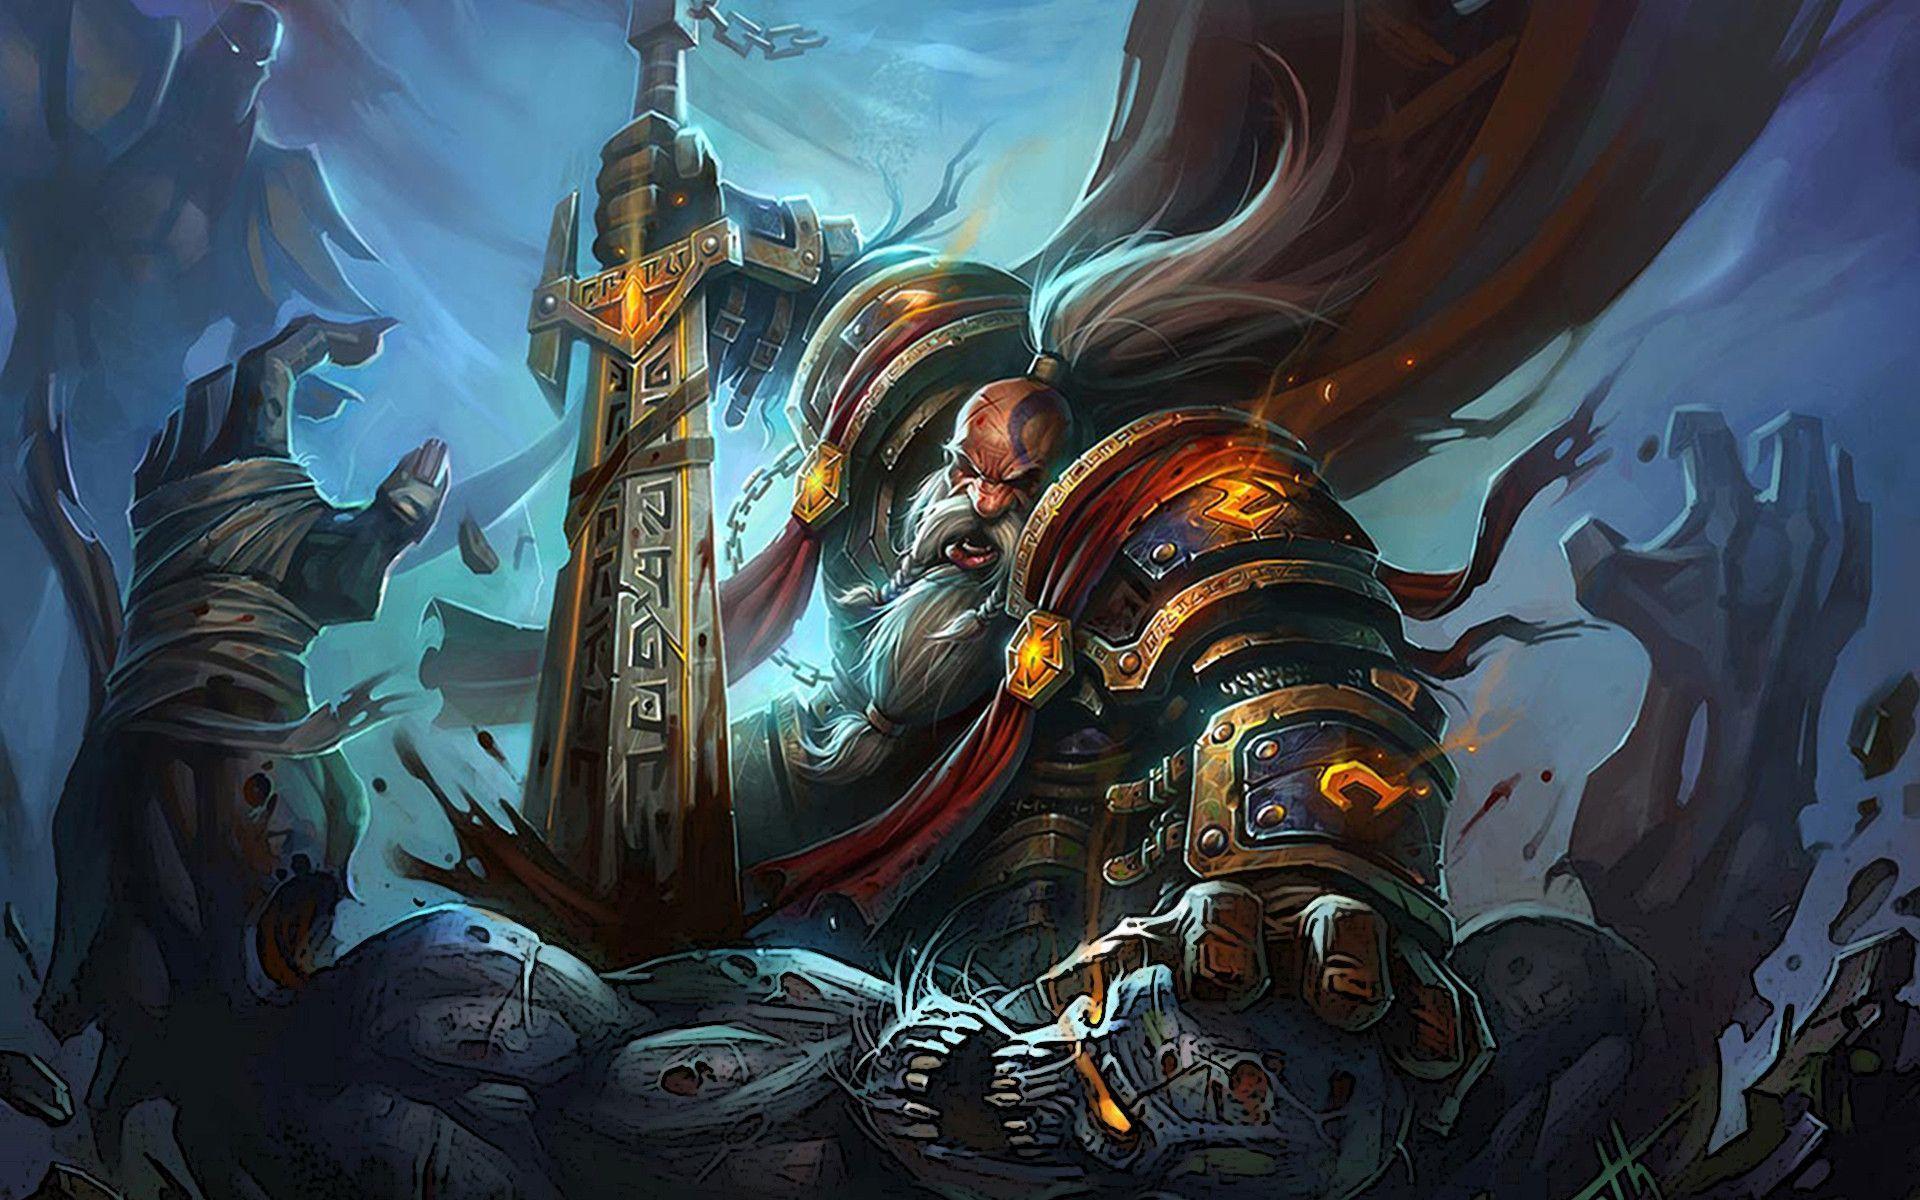 Cool World of Warcraft Wallpaper 09. hdwallpaper